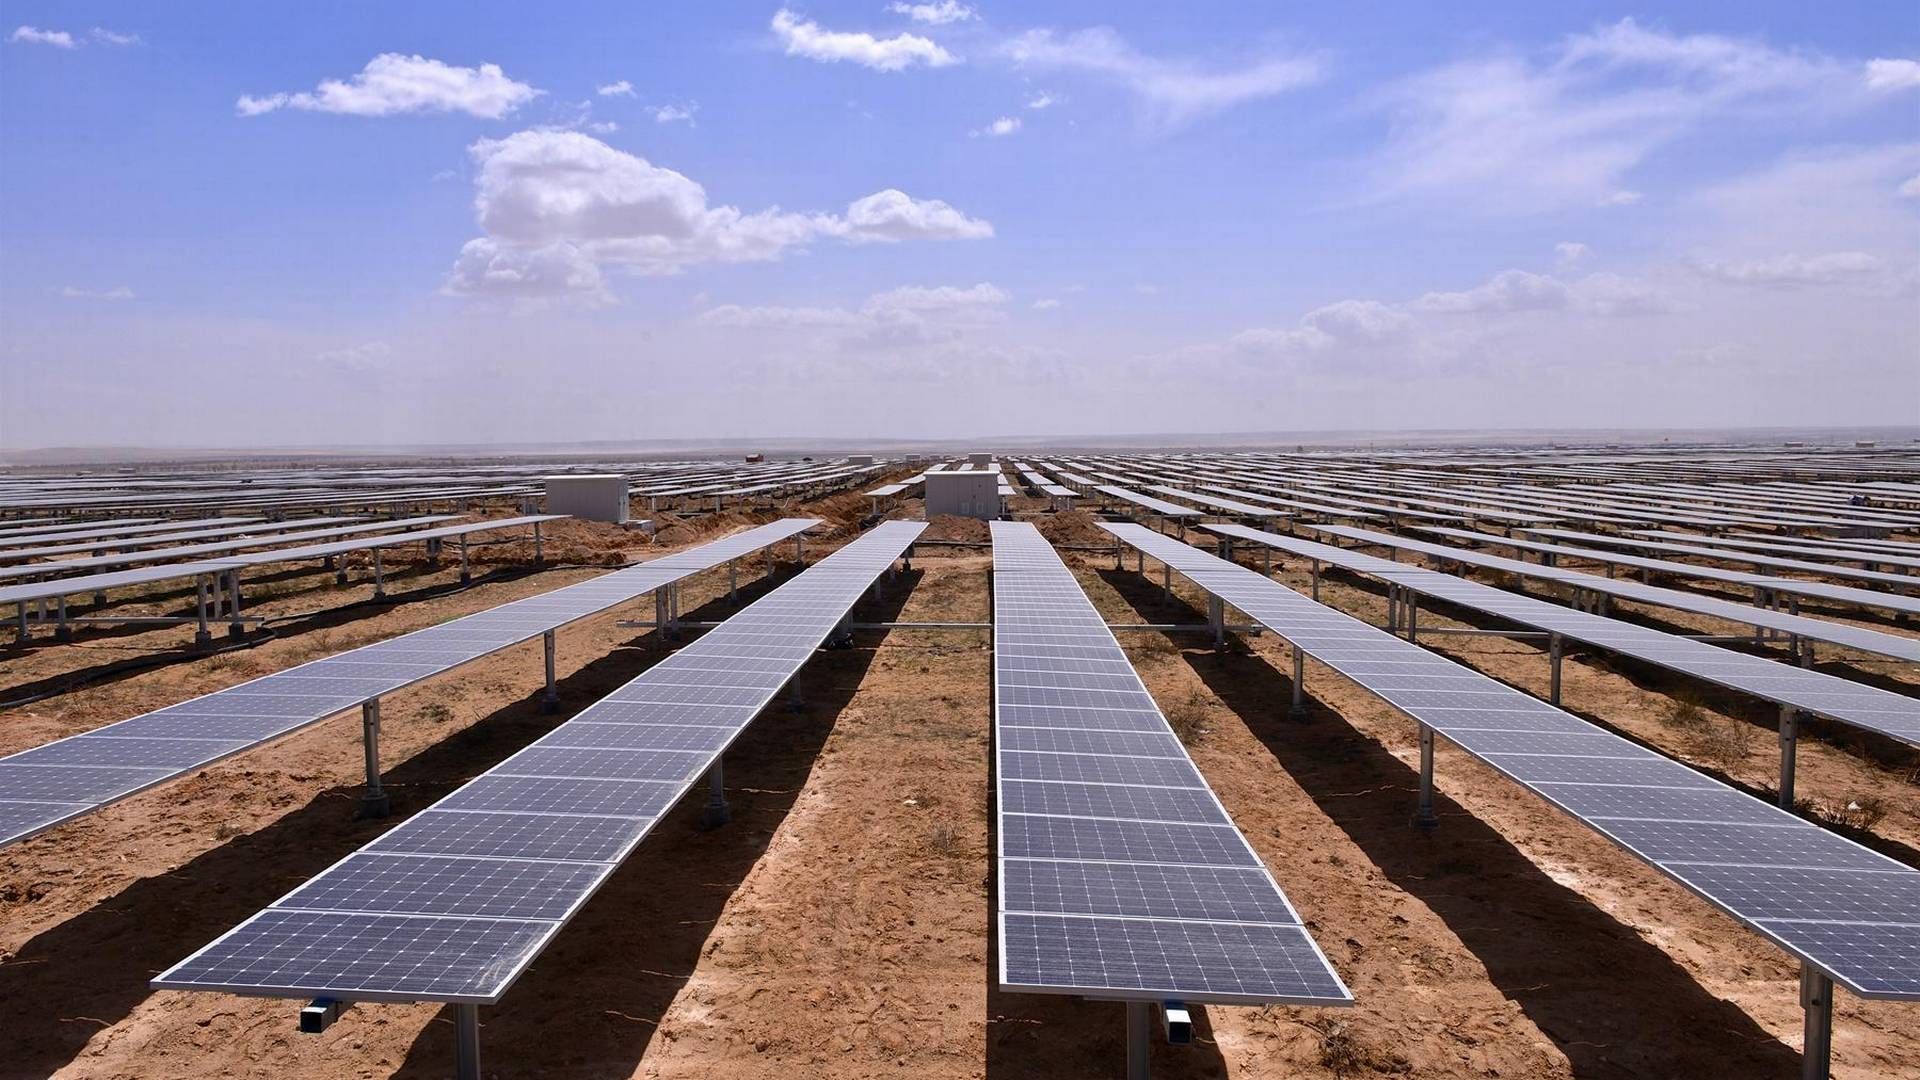 Første fase af det 2 GW store solcelleanlæg i Ningxia-regionen i det nordvestlige Kina blev sat i drift i juni måned i år. | Foto: China Minsheng Investment Group